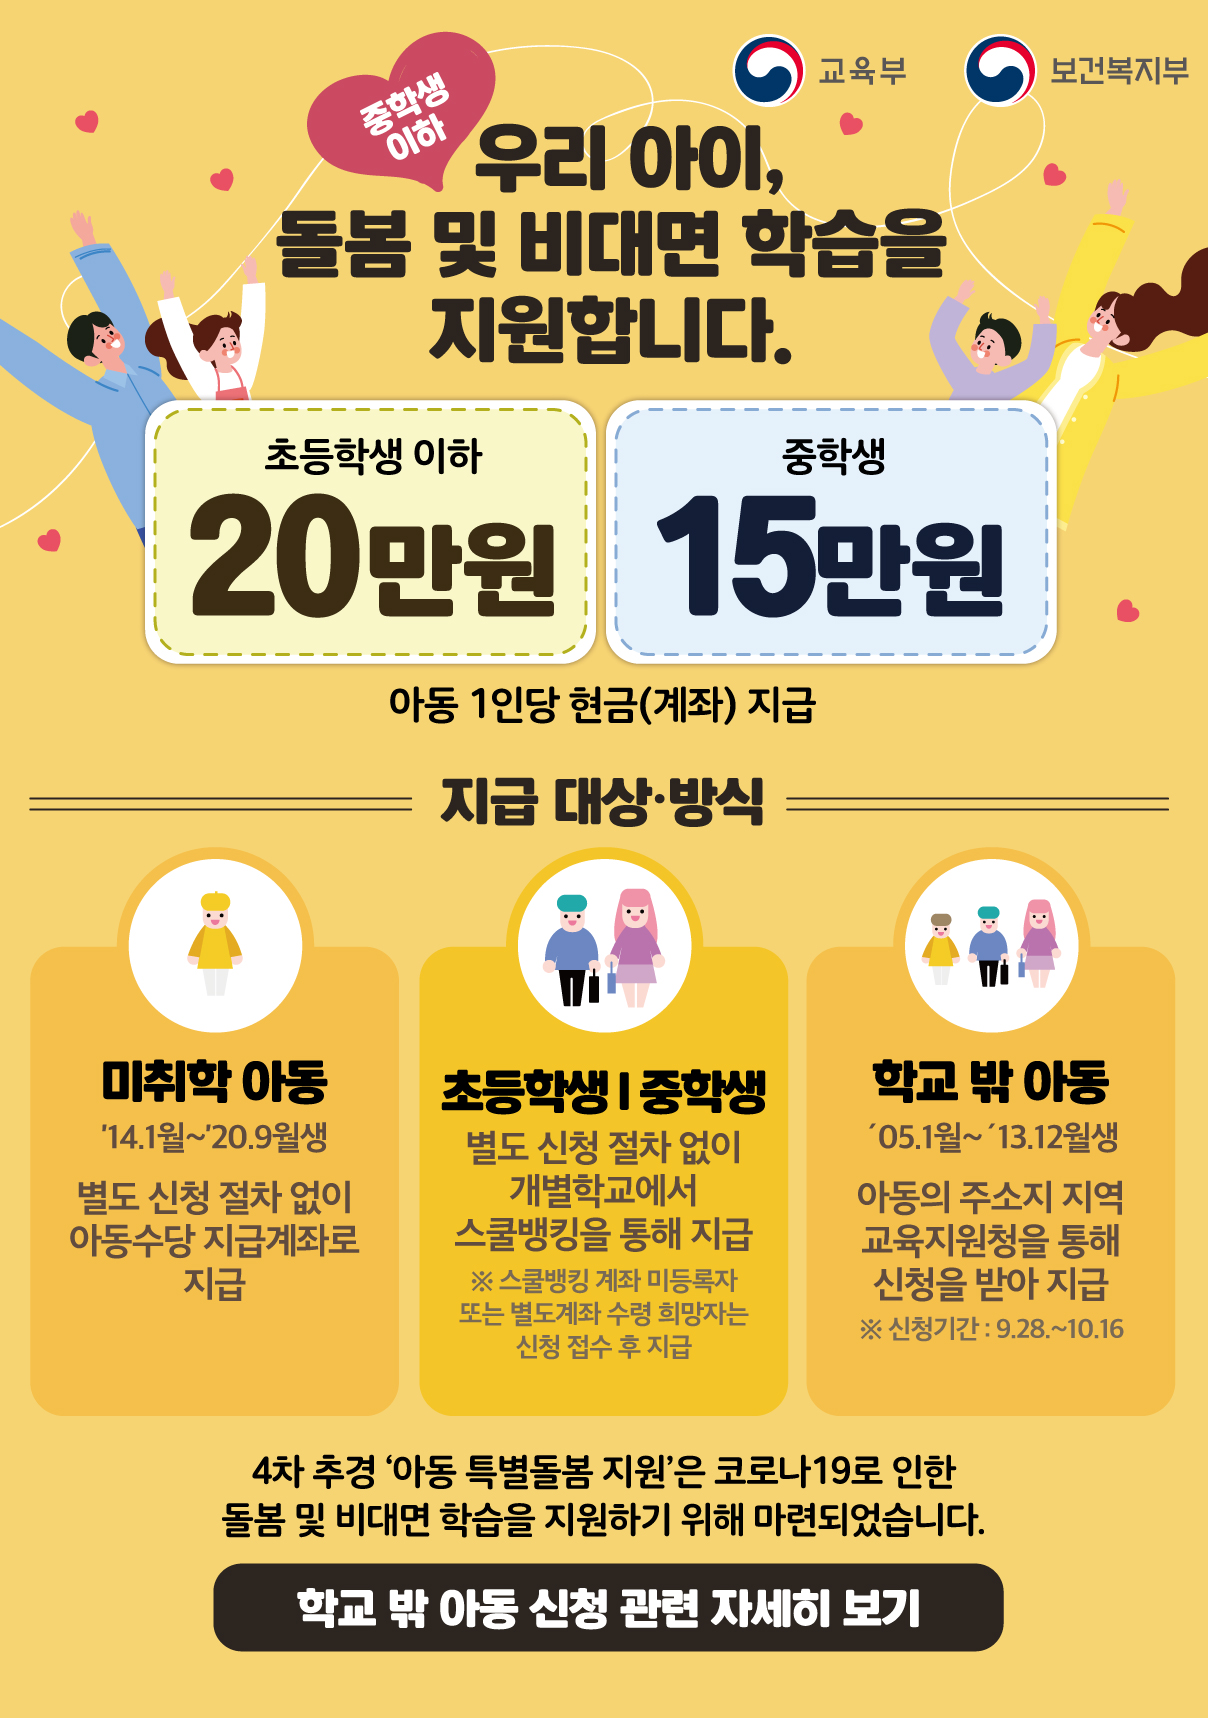 사본 -아동특별돌봄지원 홍보자료(홈페이지 팝업용).jpg